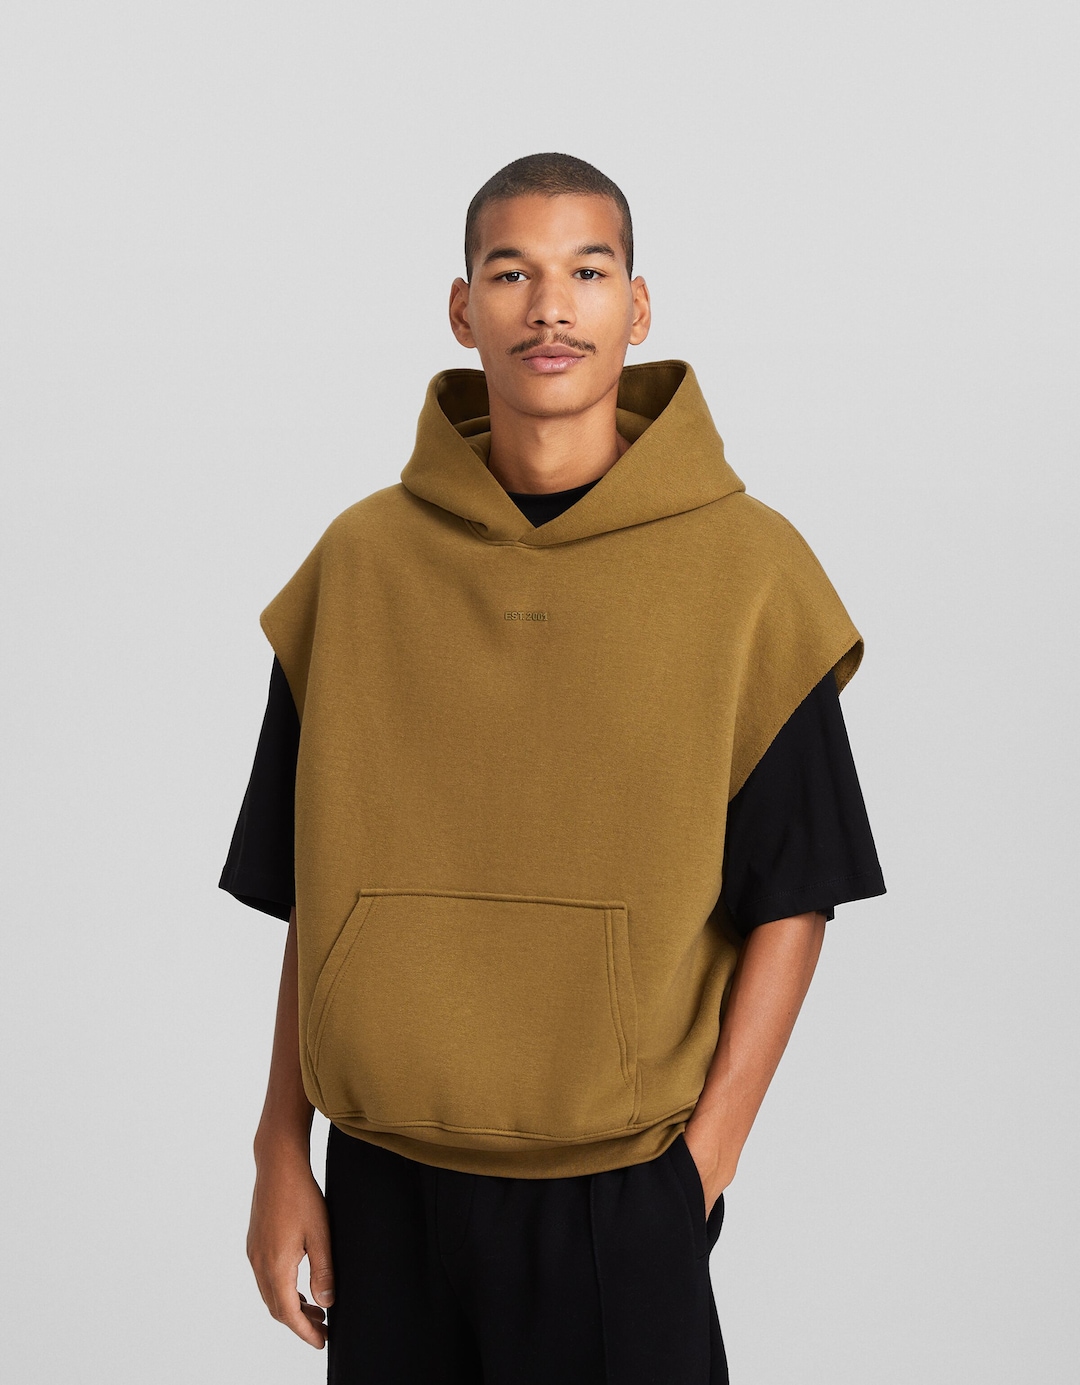 Plush boxy fit hooded vest